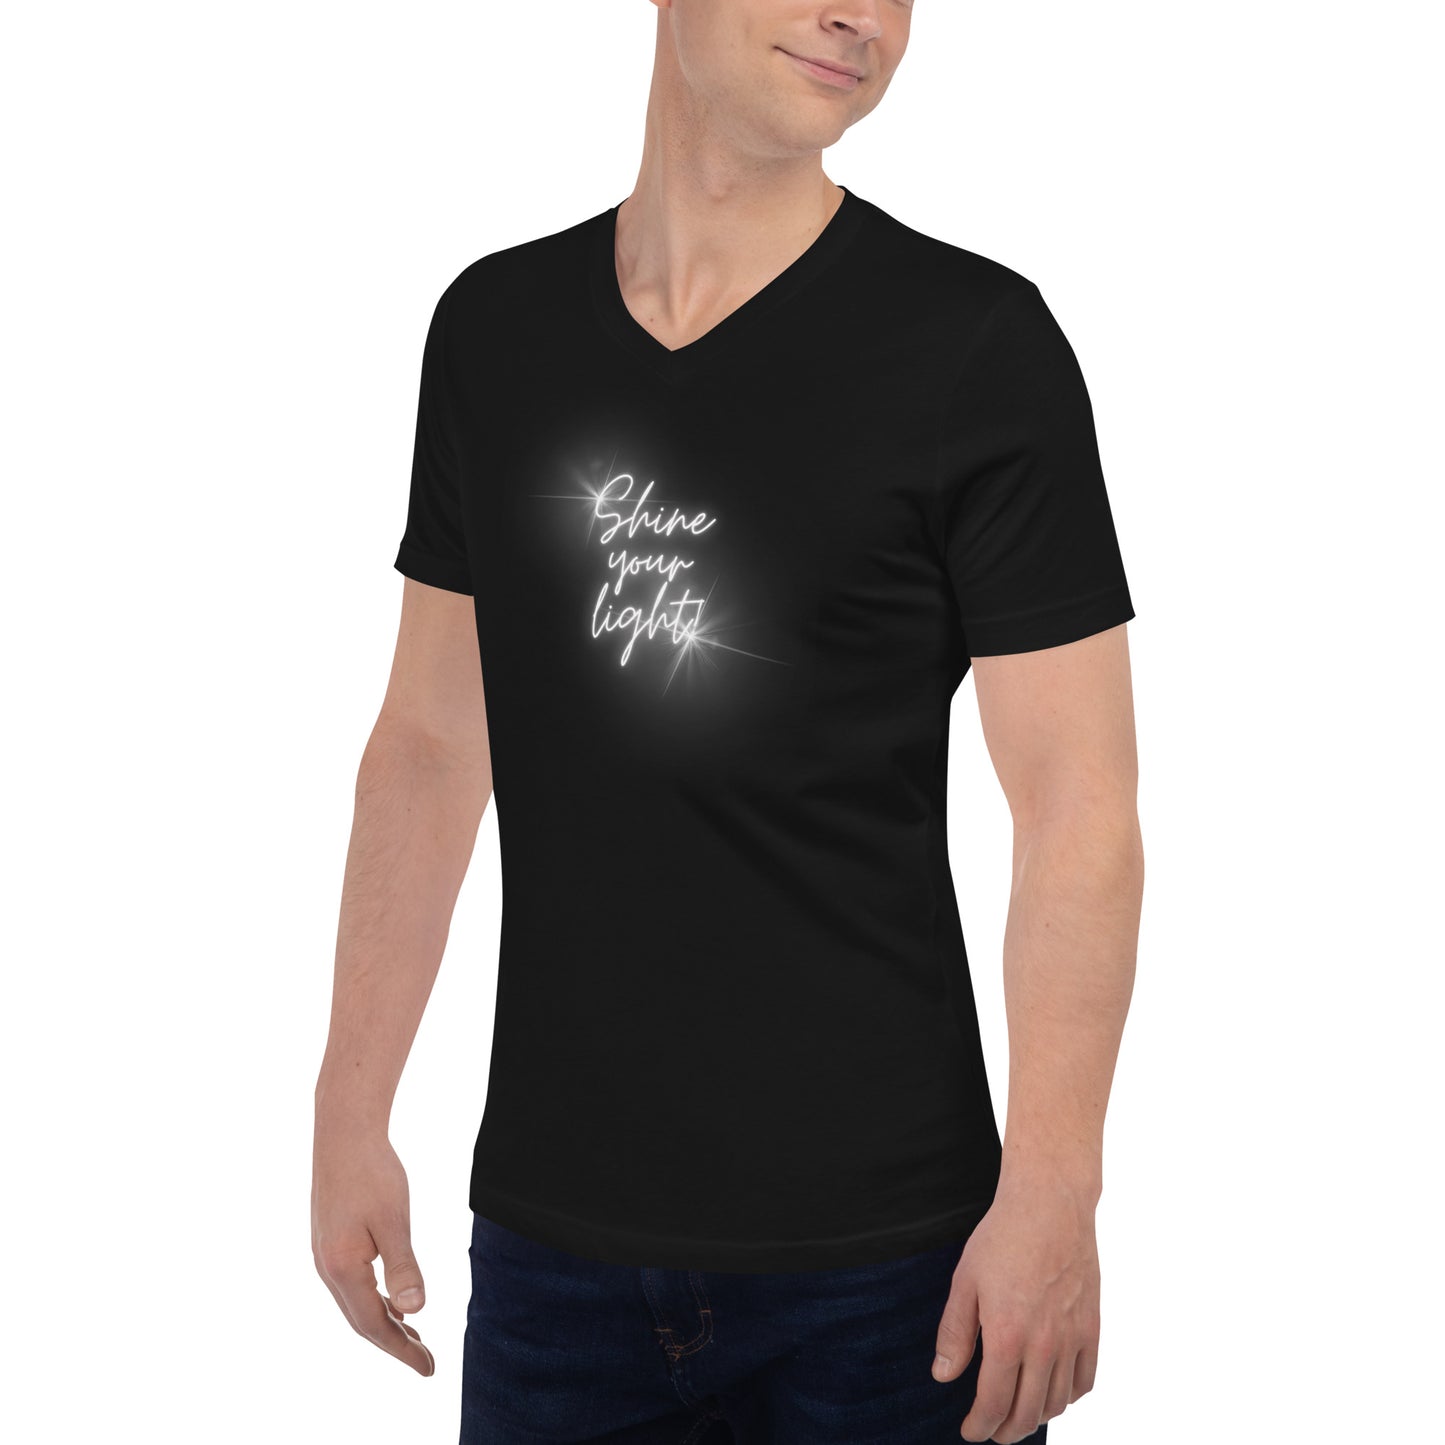 Shine Your Light - Unisex Short Sleeve V-Neck T-Shirt